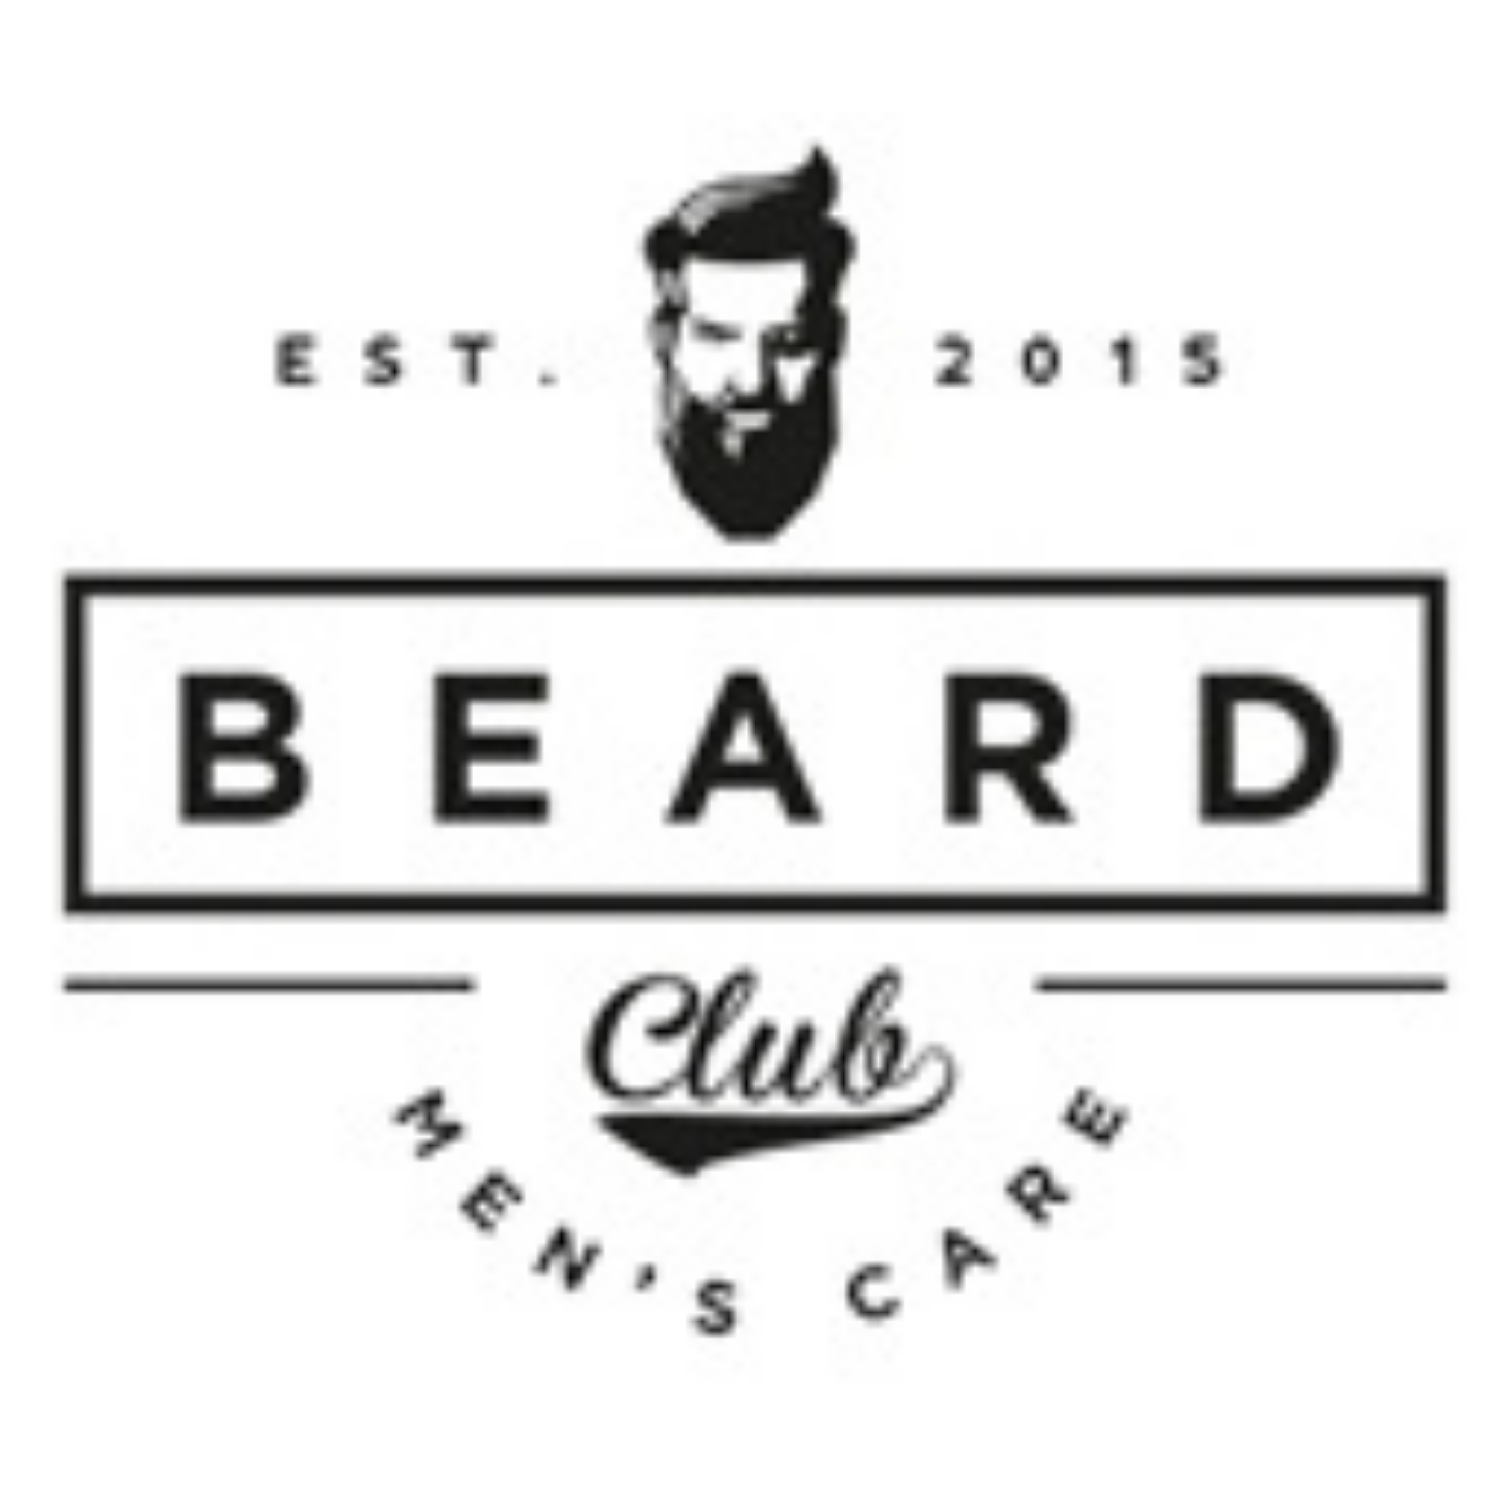 Beard CLUB